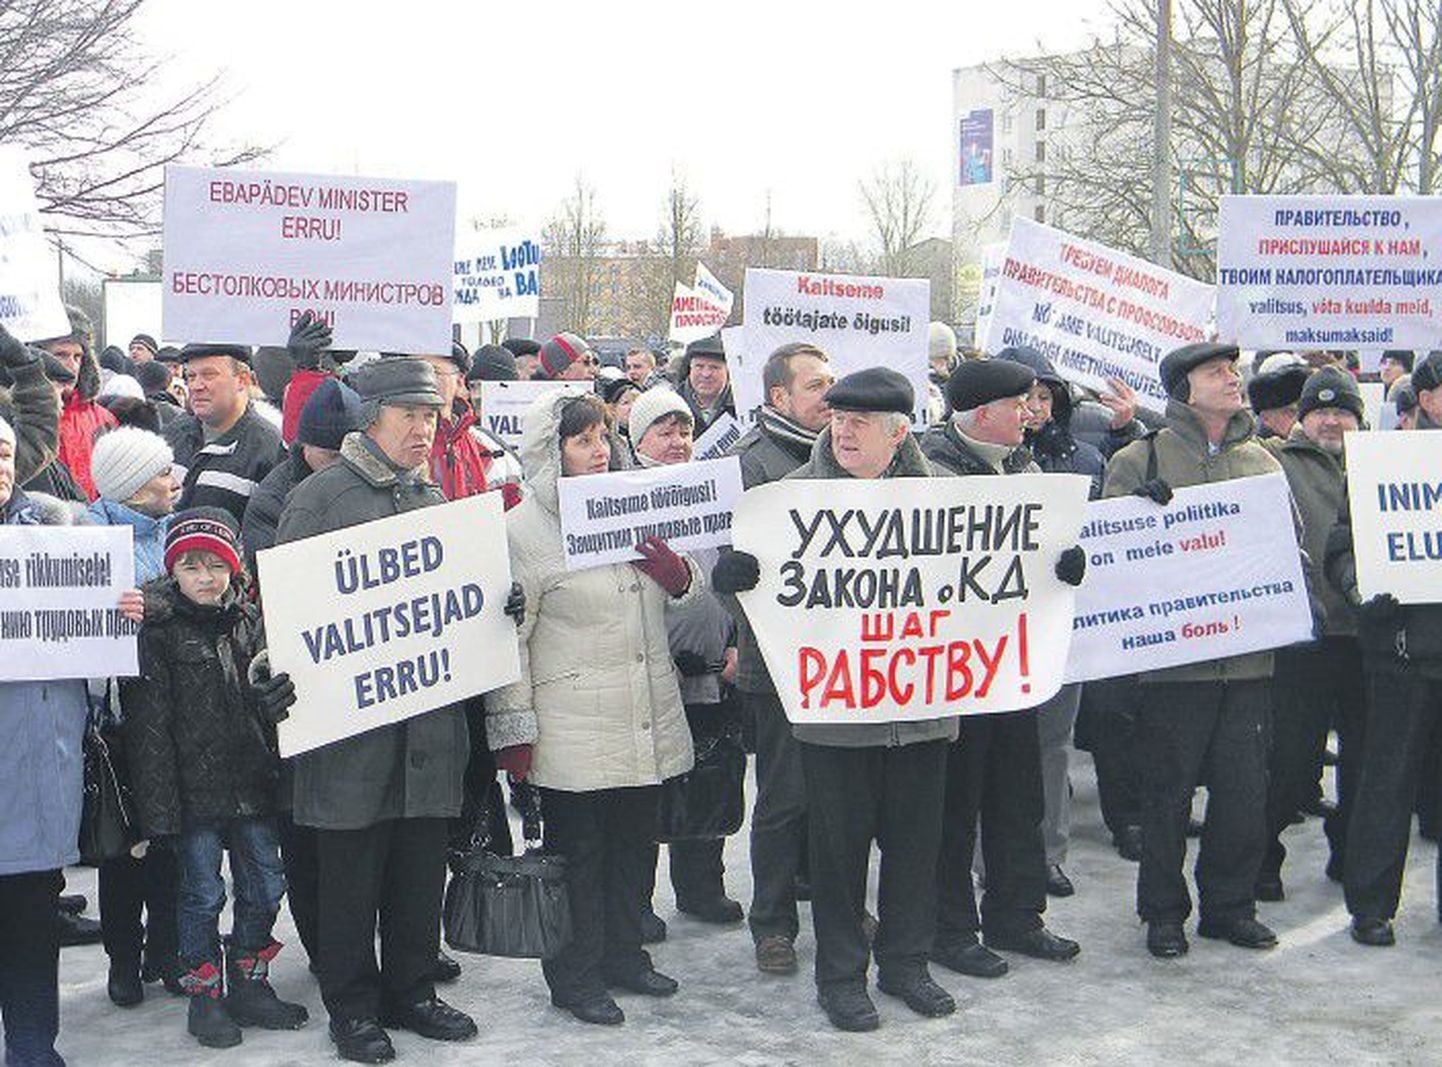 В субботу, 3 марта, в Нарве прошел митинг, организованный по инициативе нарвского профсоюза энергетиков. Идавирусцы пришли с лозунгами на русском и эстонском языках, призывающими к отставке правящего кабинета.